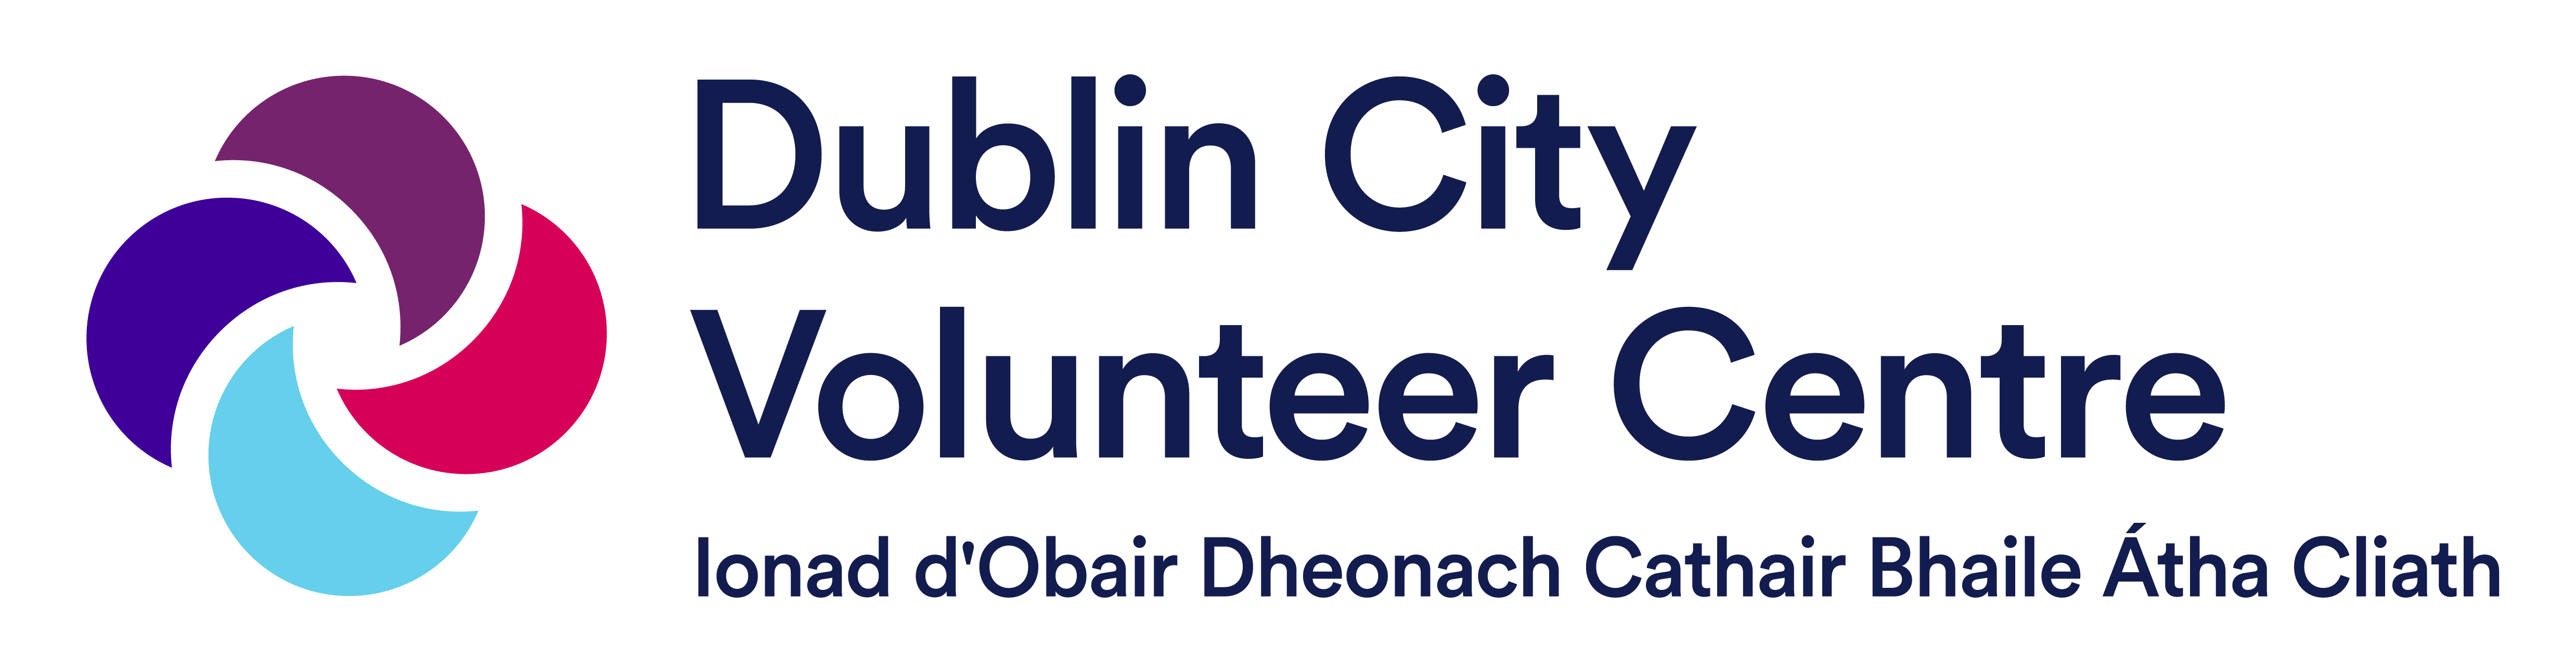 Dublin City Volunteer Centre